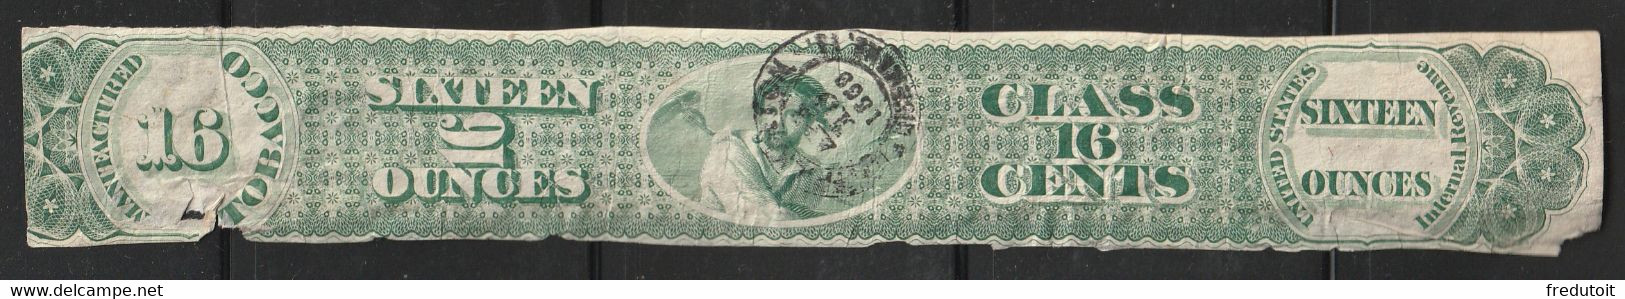 FISCAUX - TOBACCO Stamp Revenue : Sixteen Ounces - Revenues